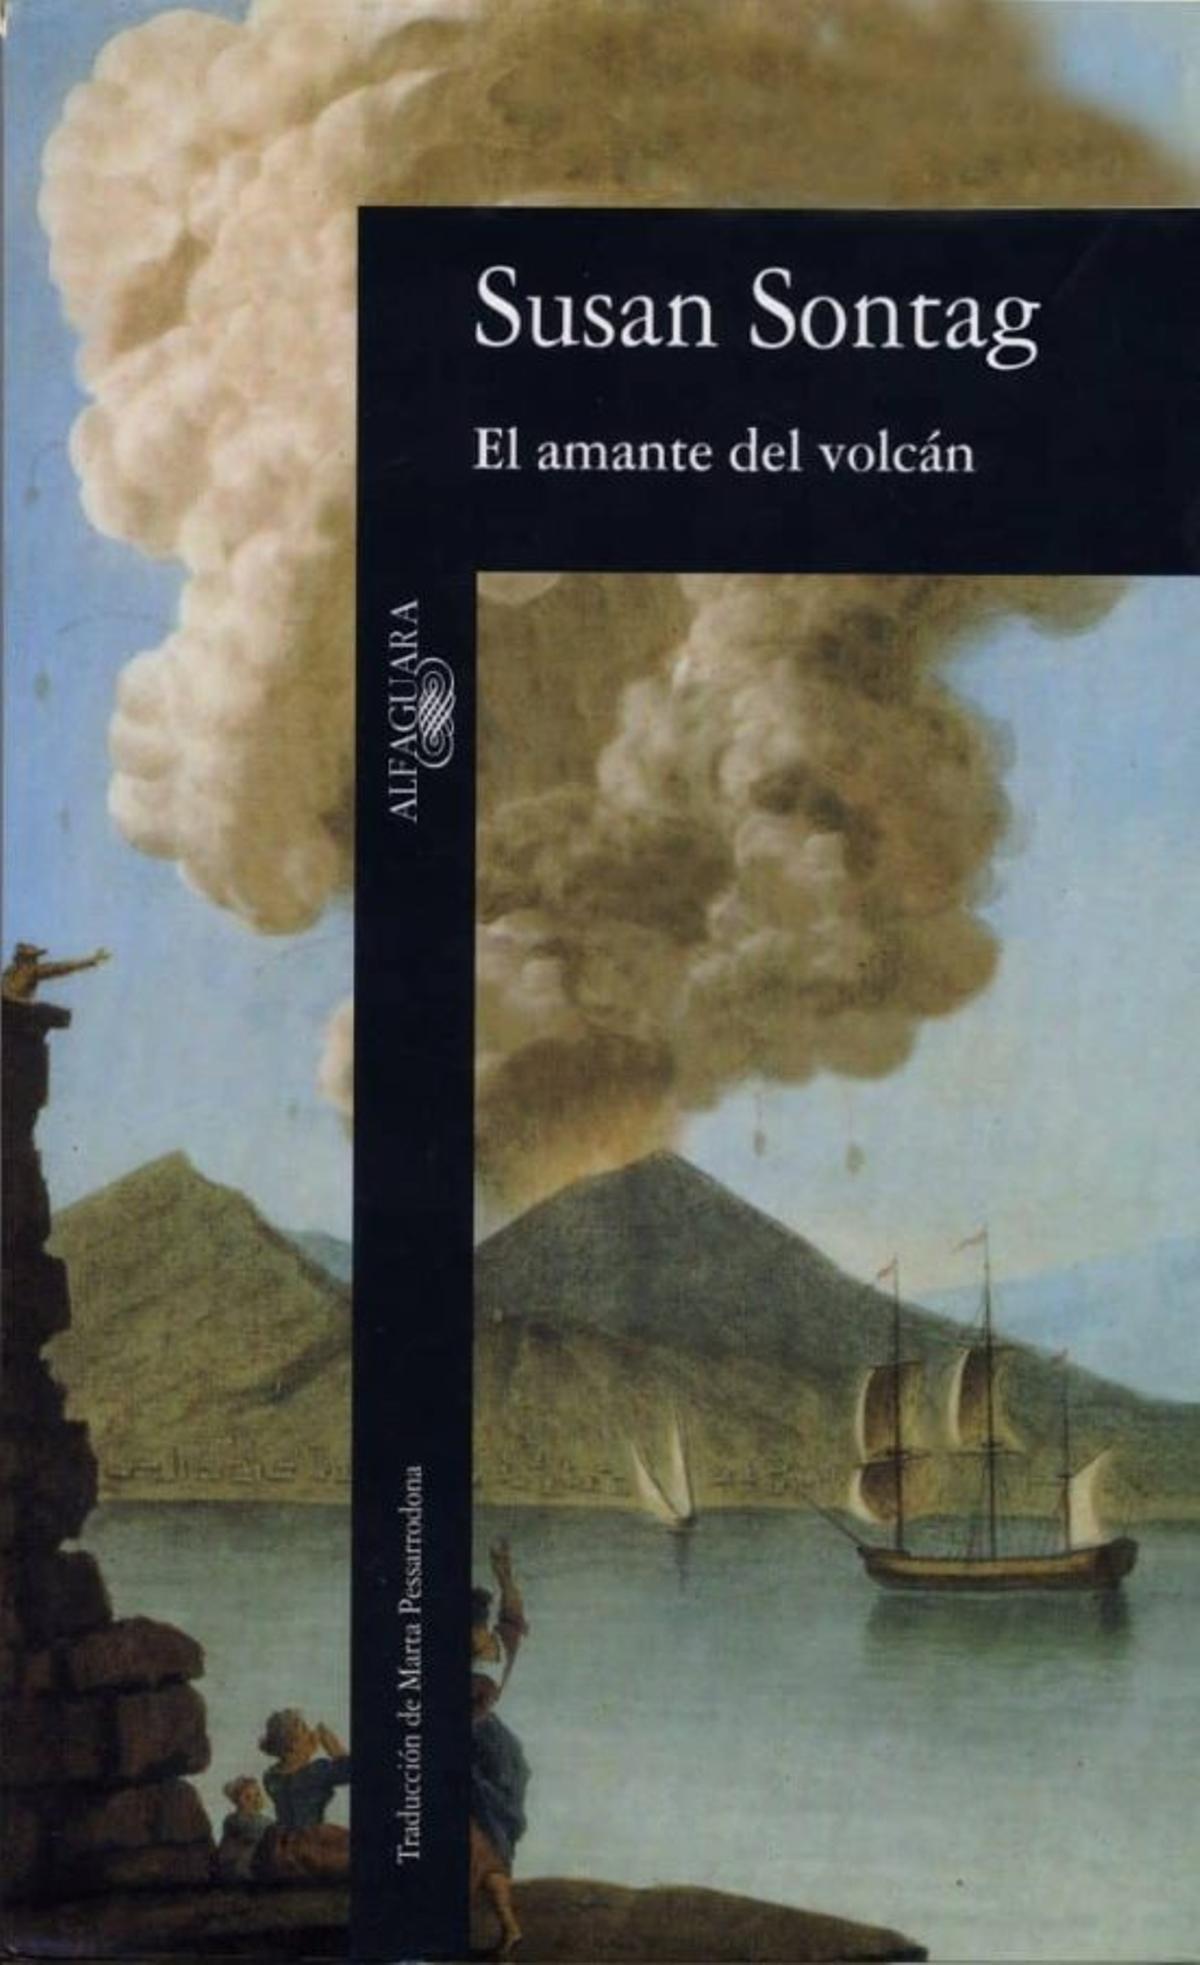 Portada de ‘El amante del volcán’, de Susan Sontag (1992).